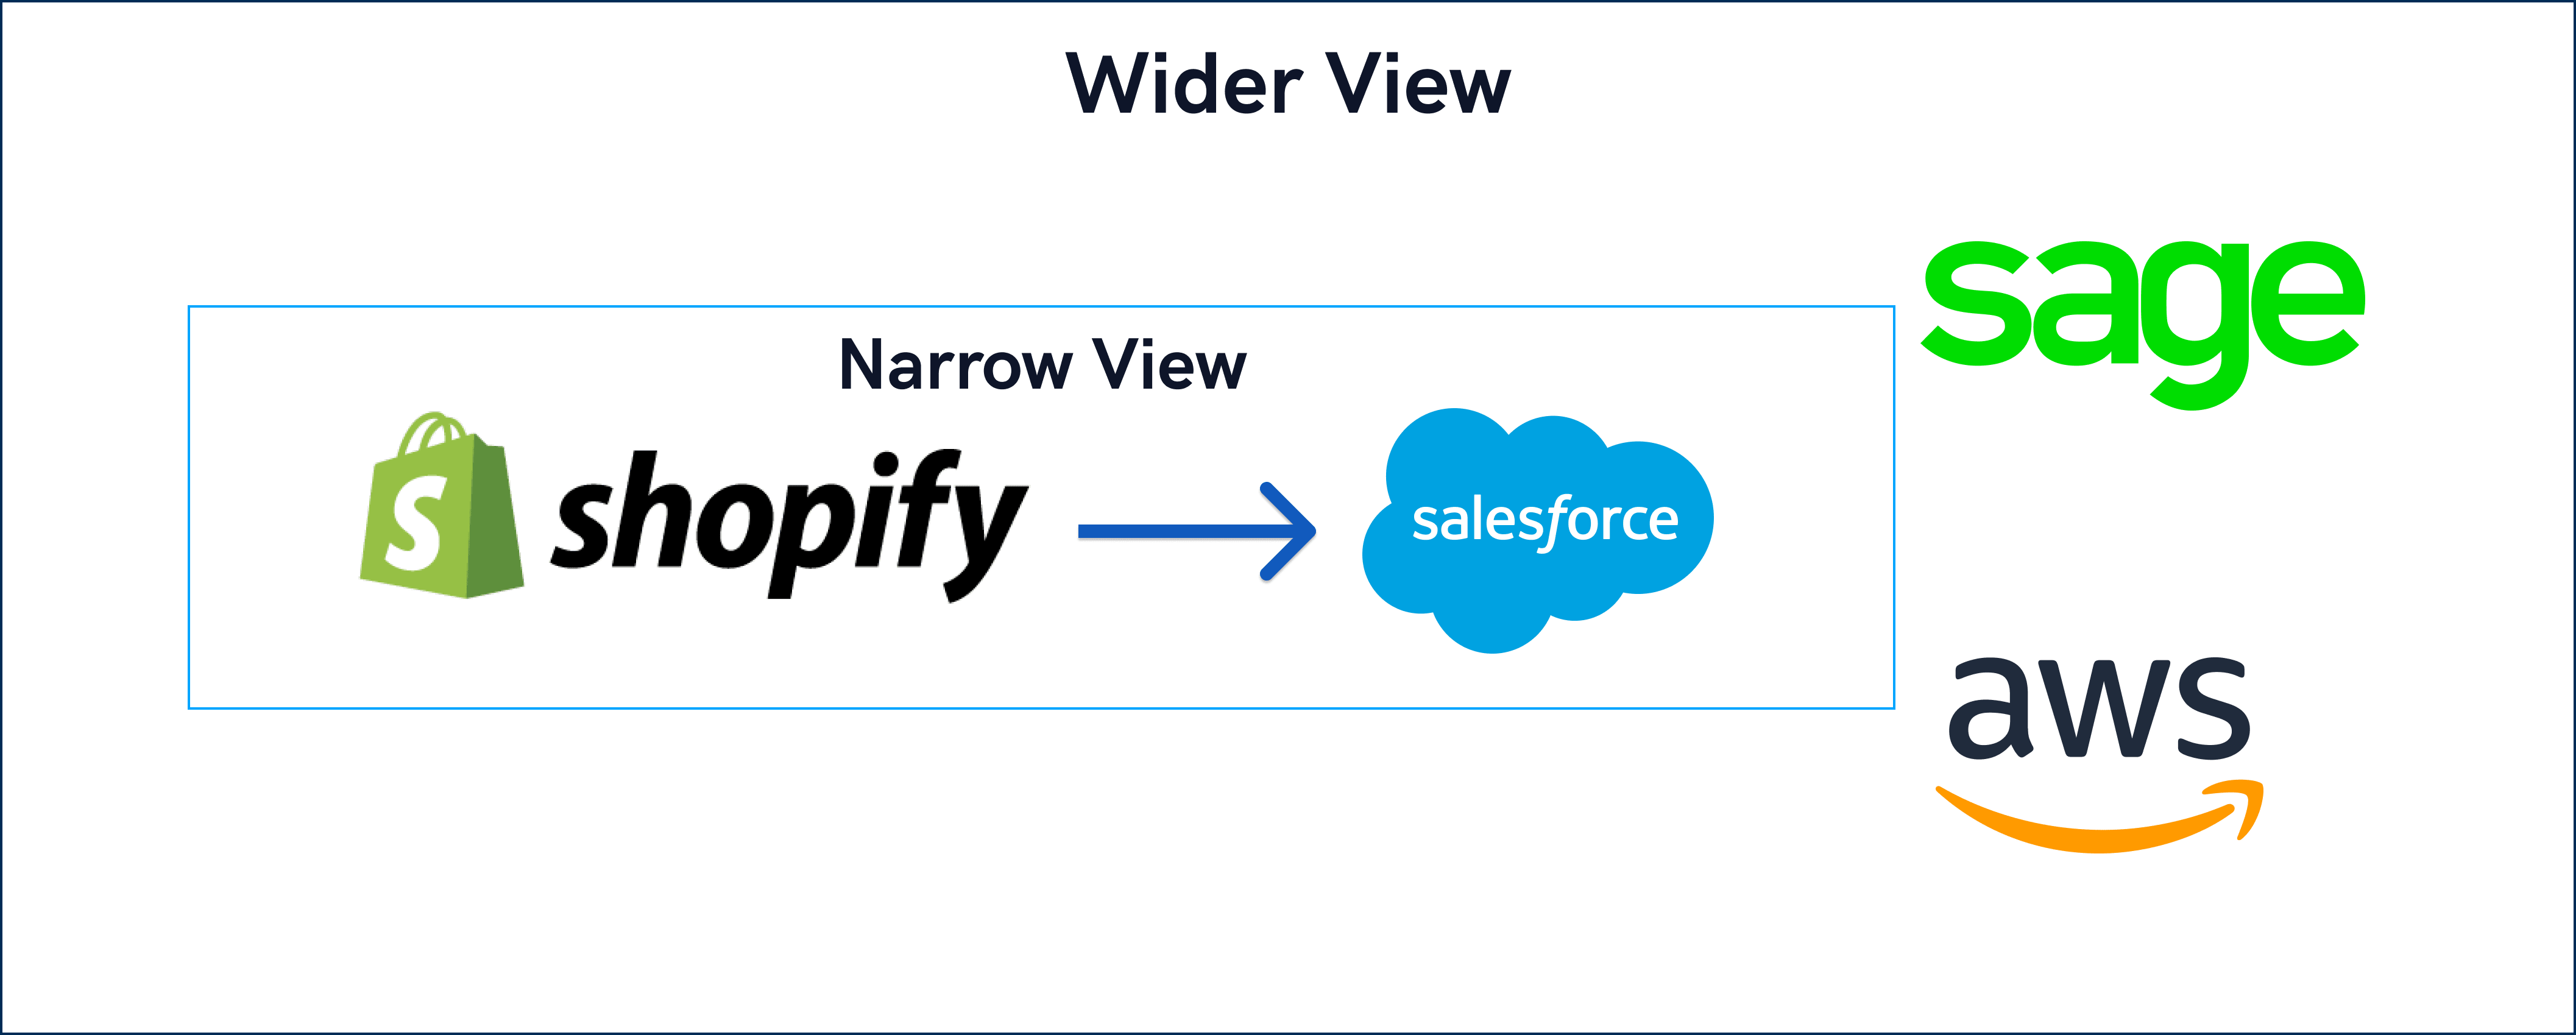 Wider View 2 V2